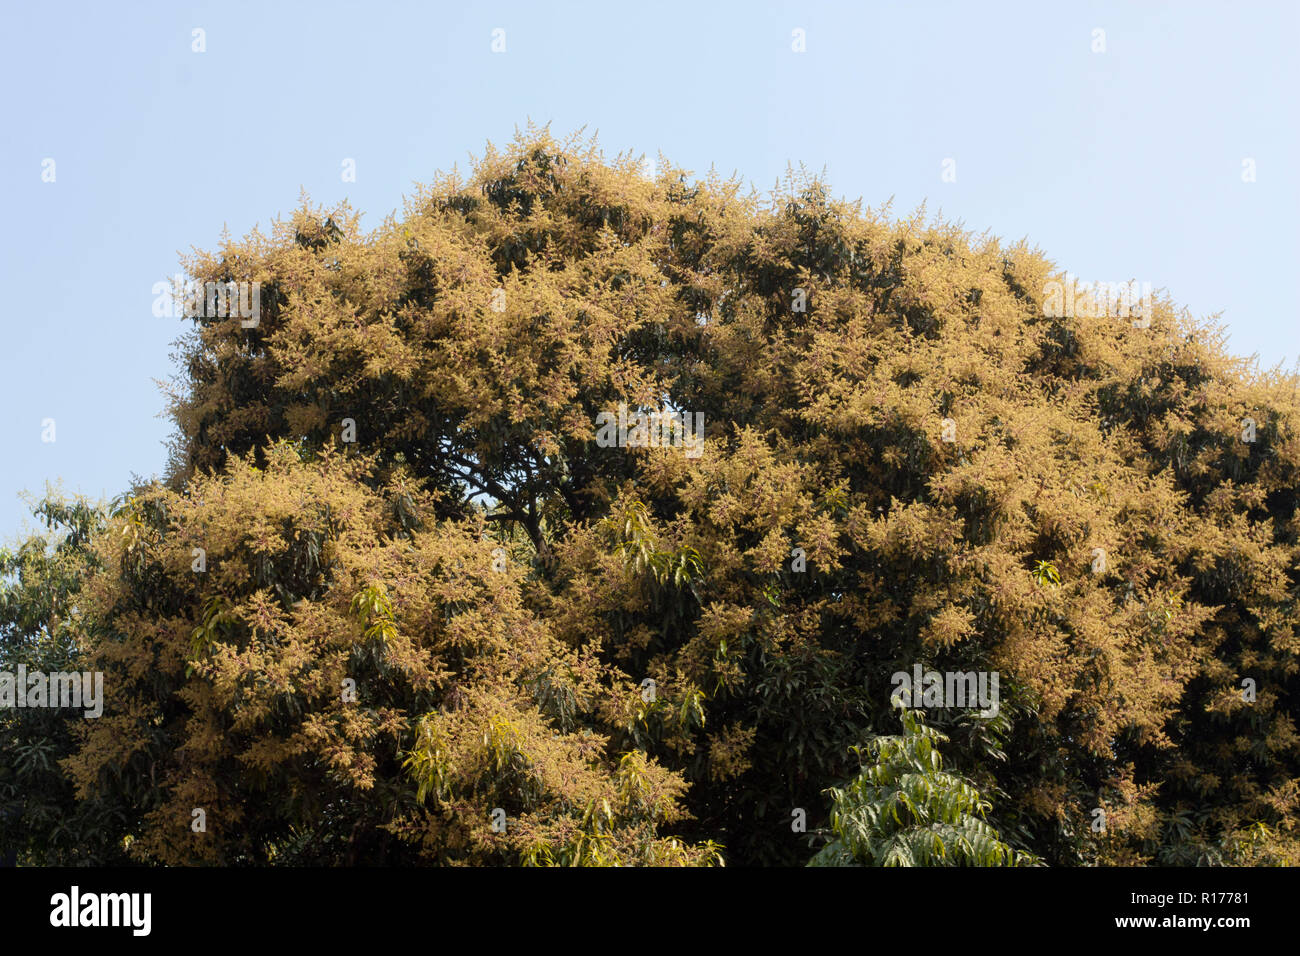 https://c8.alamy.com/comp/R17781/blossom-of-mango-tree-bangladesh-R17781.jpg